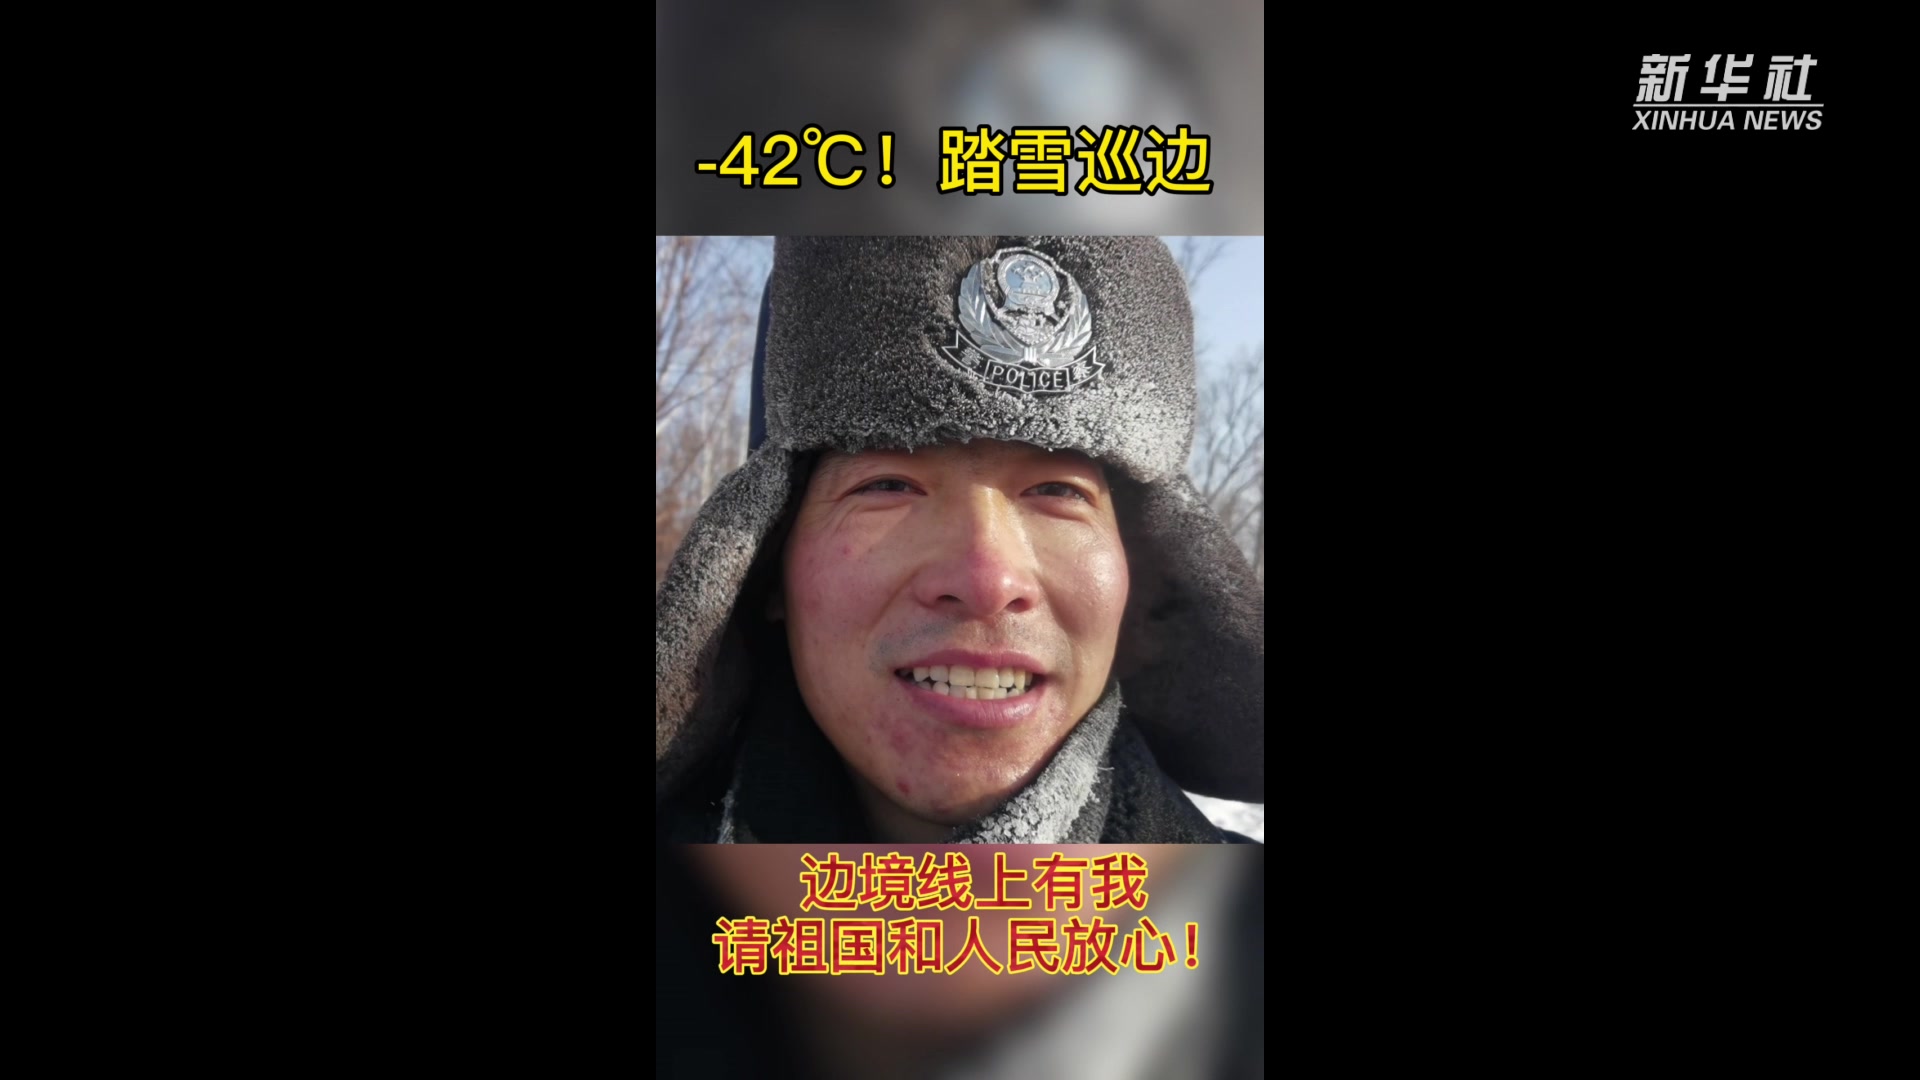 移民管理警察内蒙古-42℃踏雪巡边